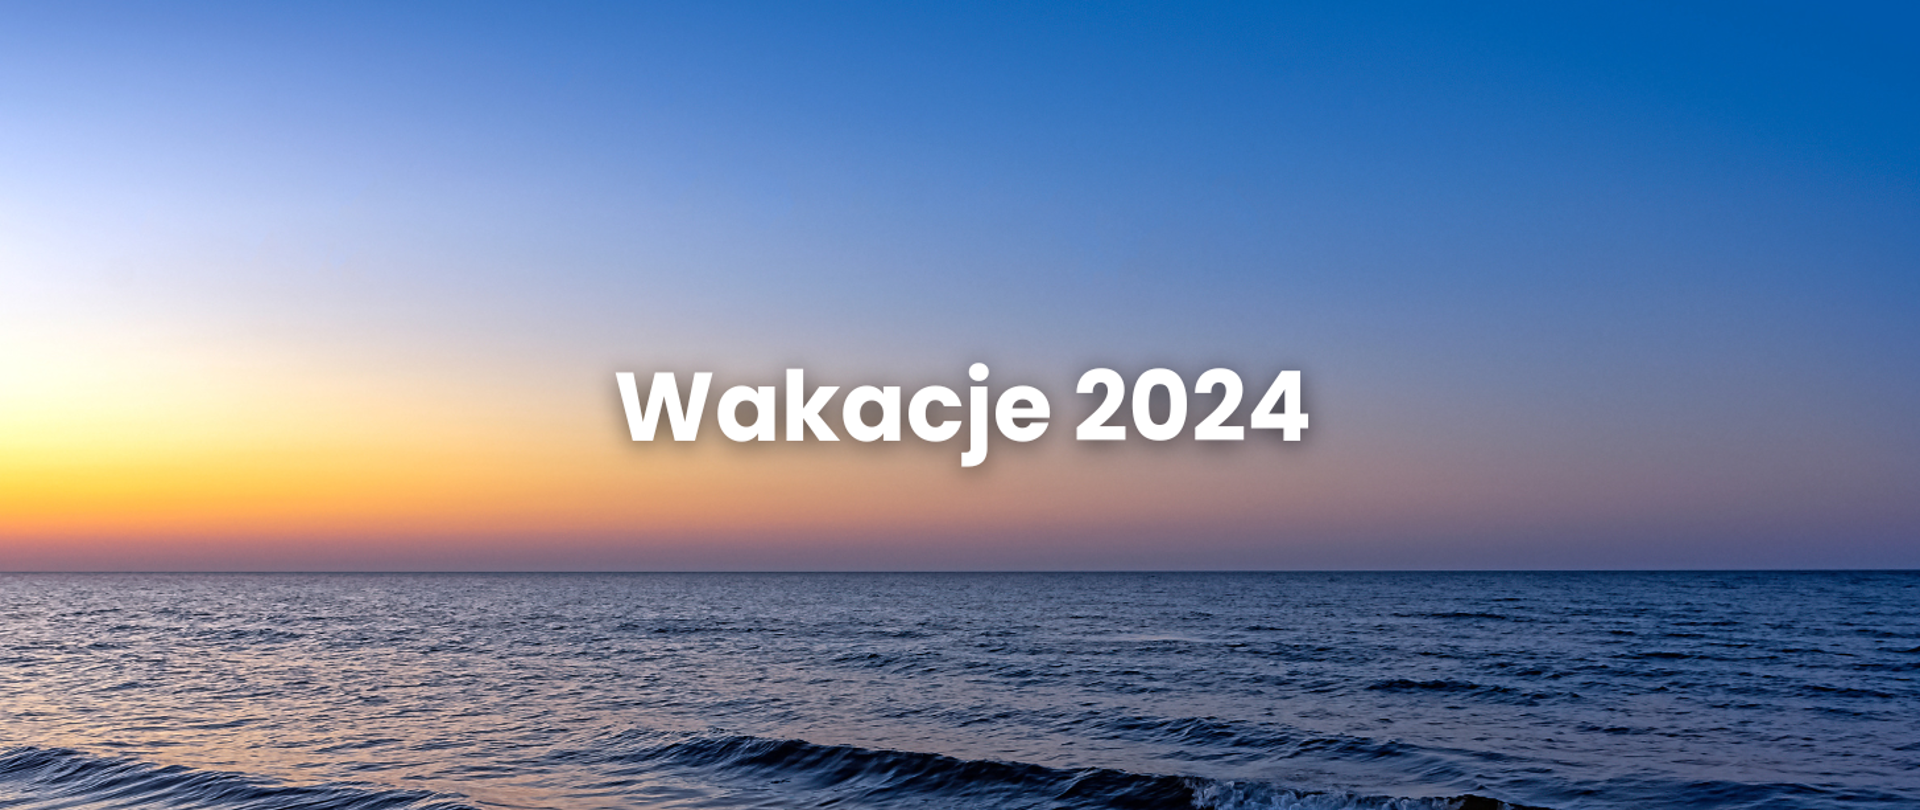 Na zdjęciu widnieje napis "Wakacje 2024". W tle widoczne jest morze